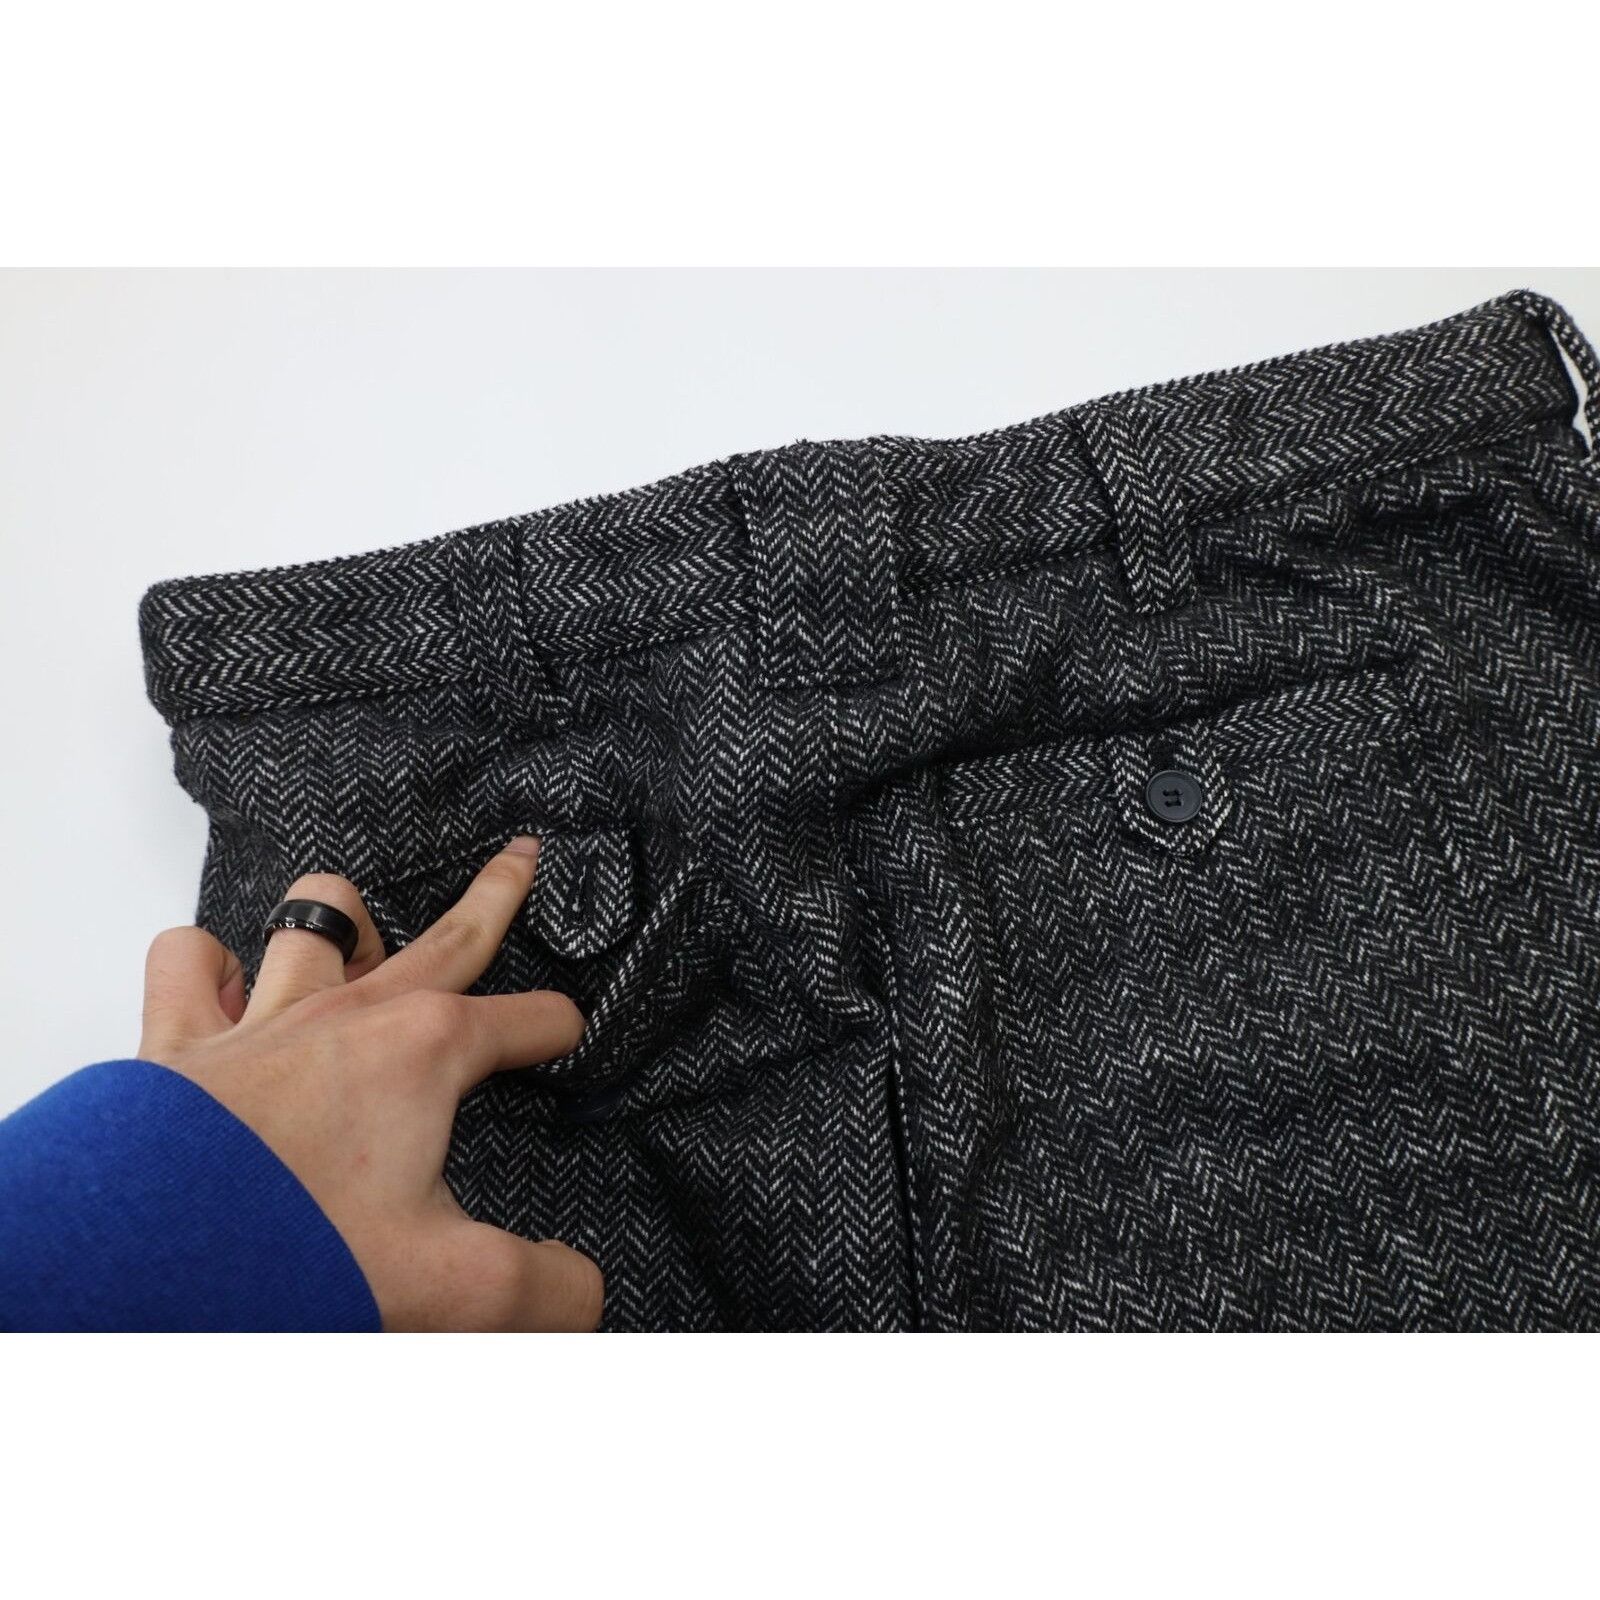 Vintage Vintage 90s Streetwear Tweed Herringbone Chino Pants Size US 34 / EU 50 - 9 Preview